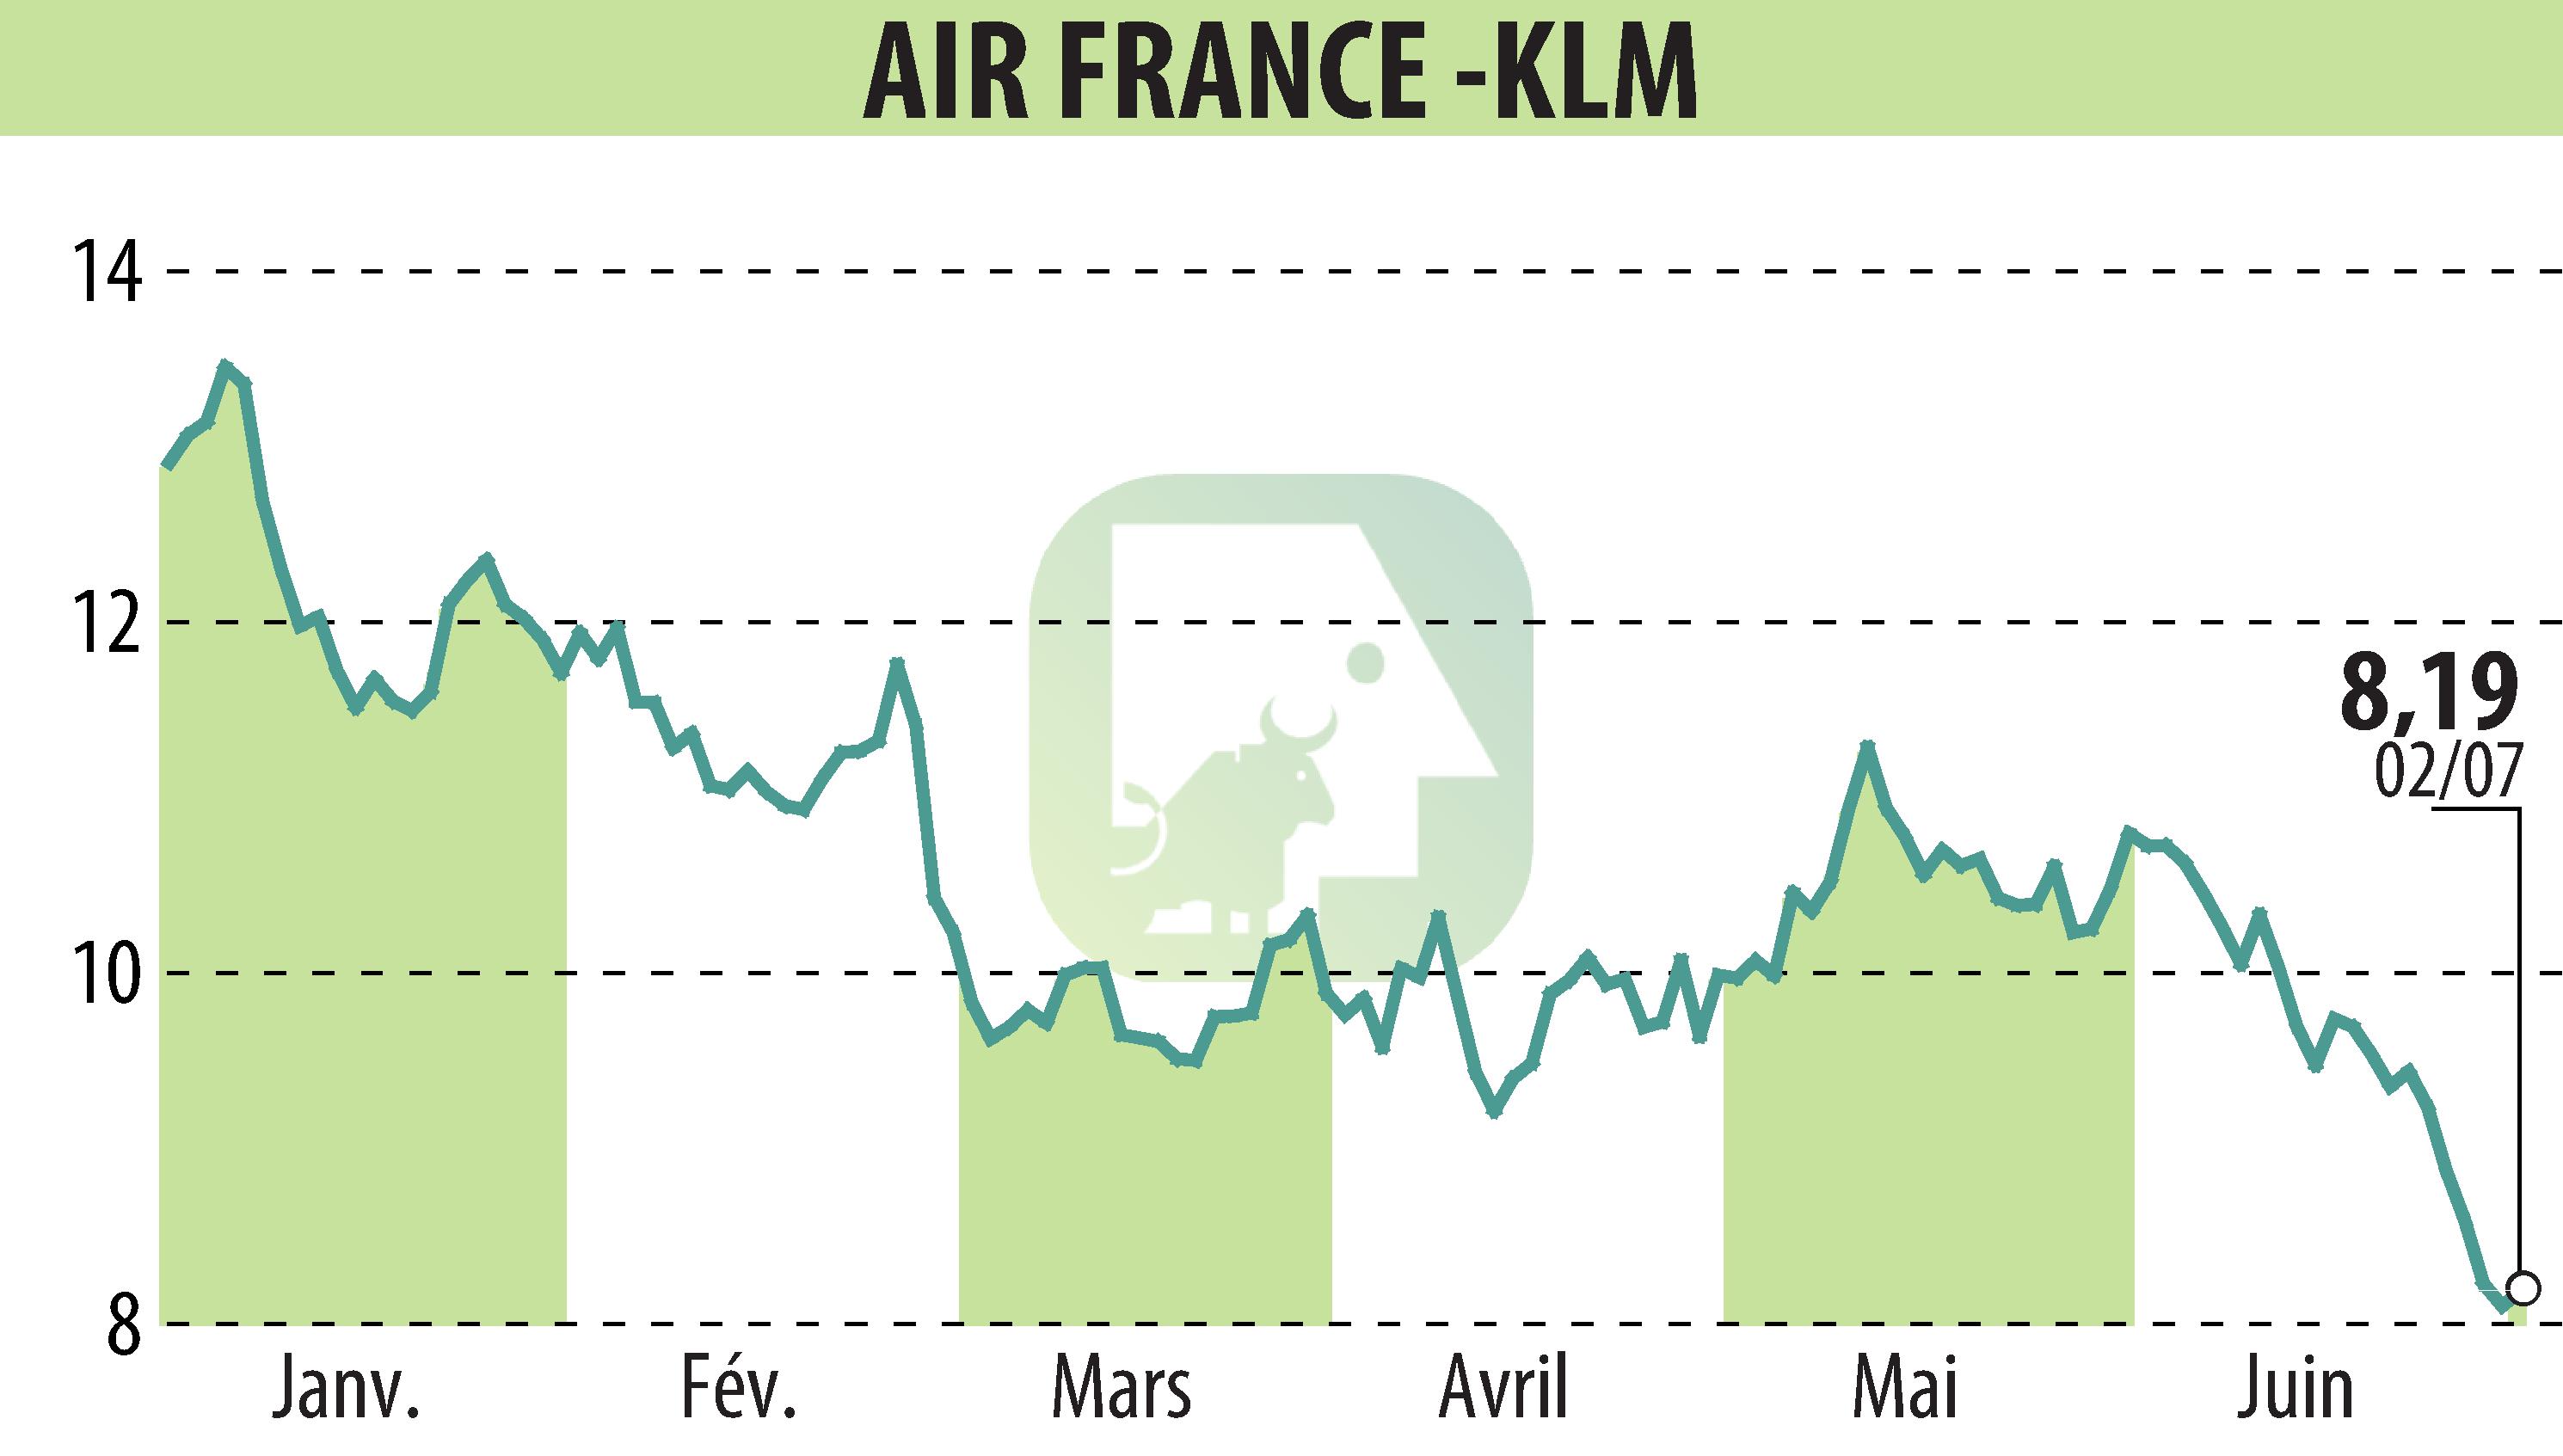 Graphique de l'évolution du cours de l'action AIR FRANCE-KLM (EPA:AF).